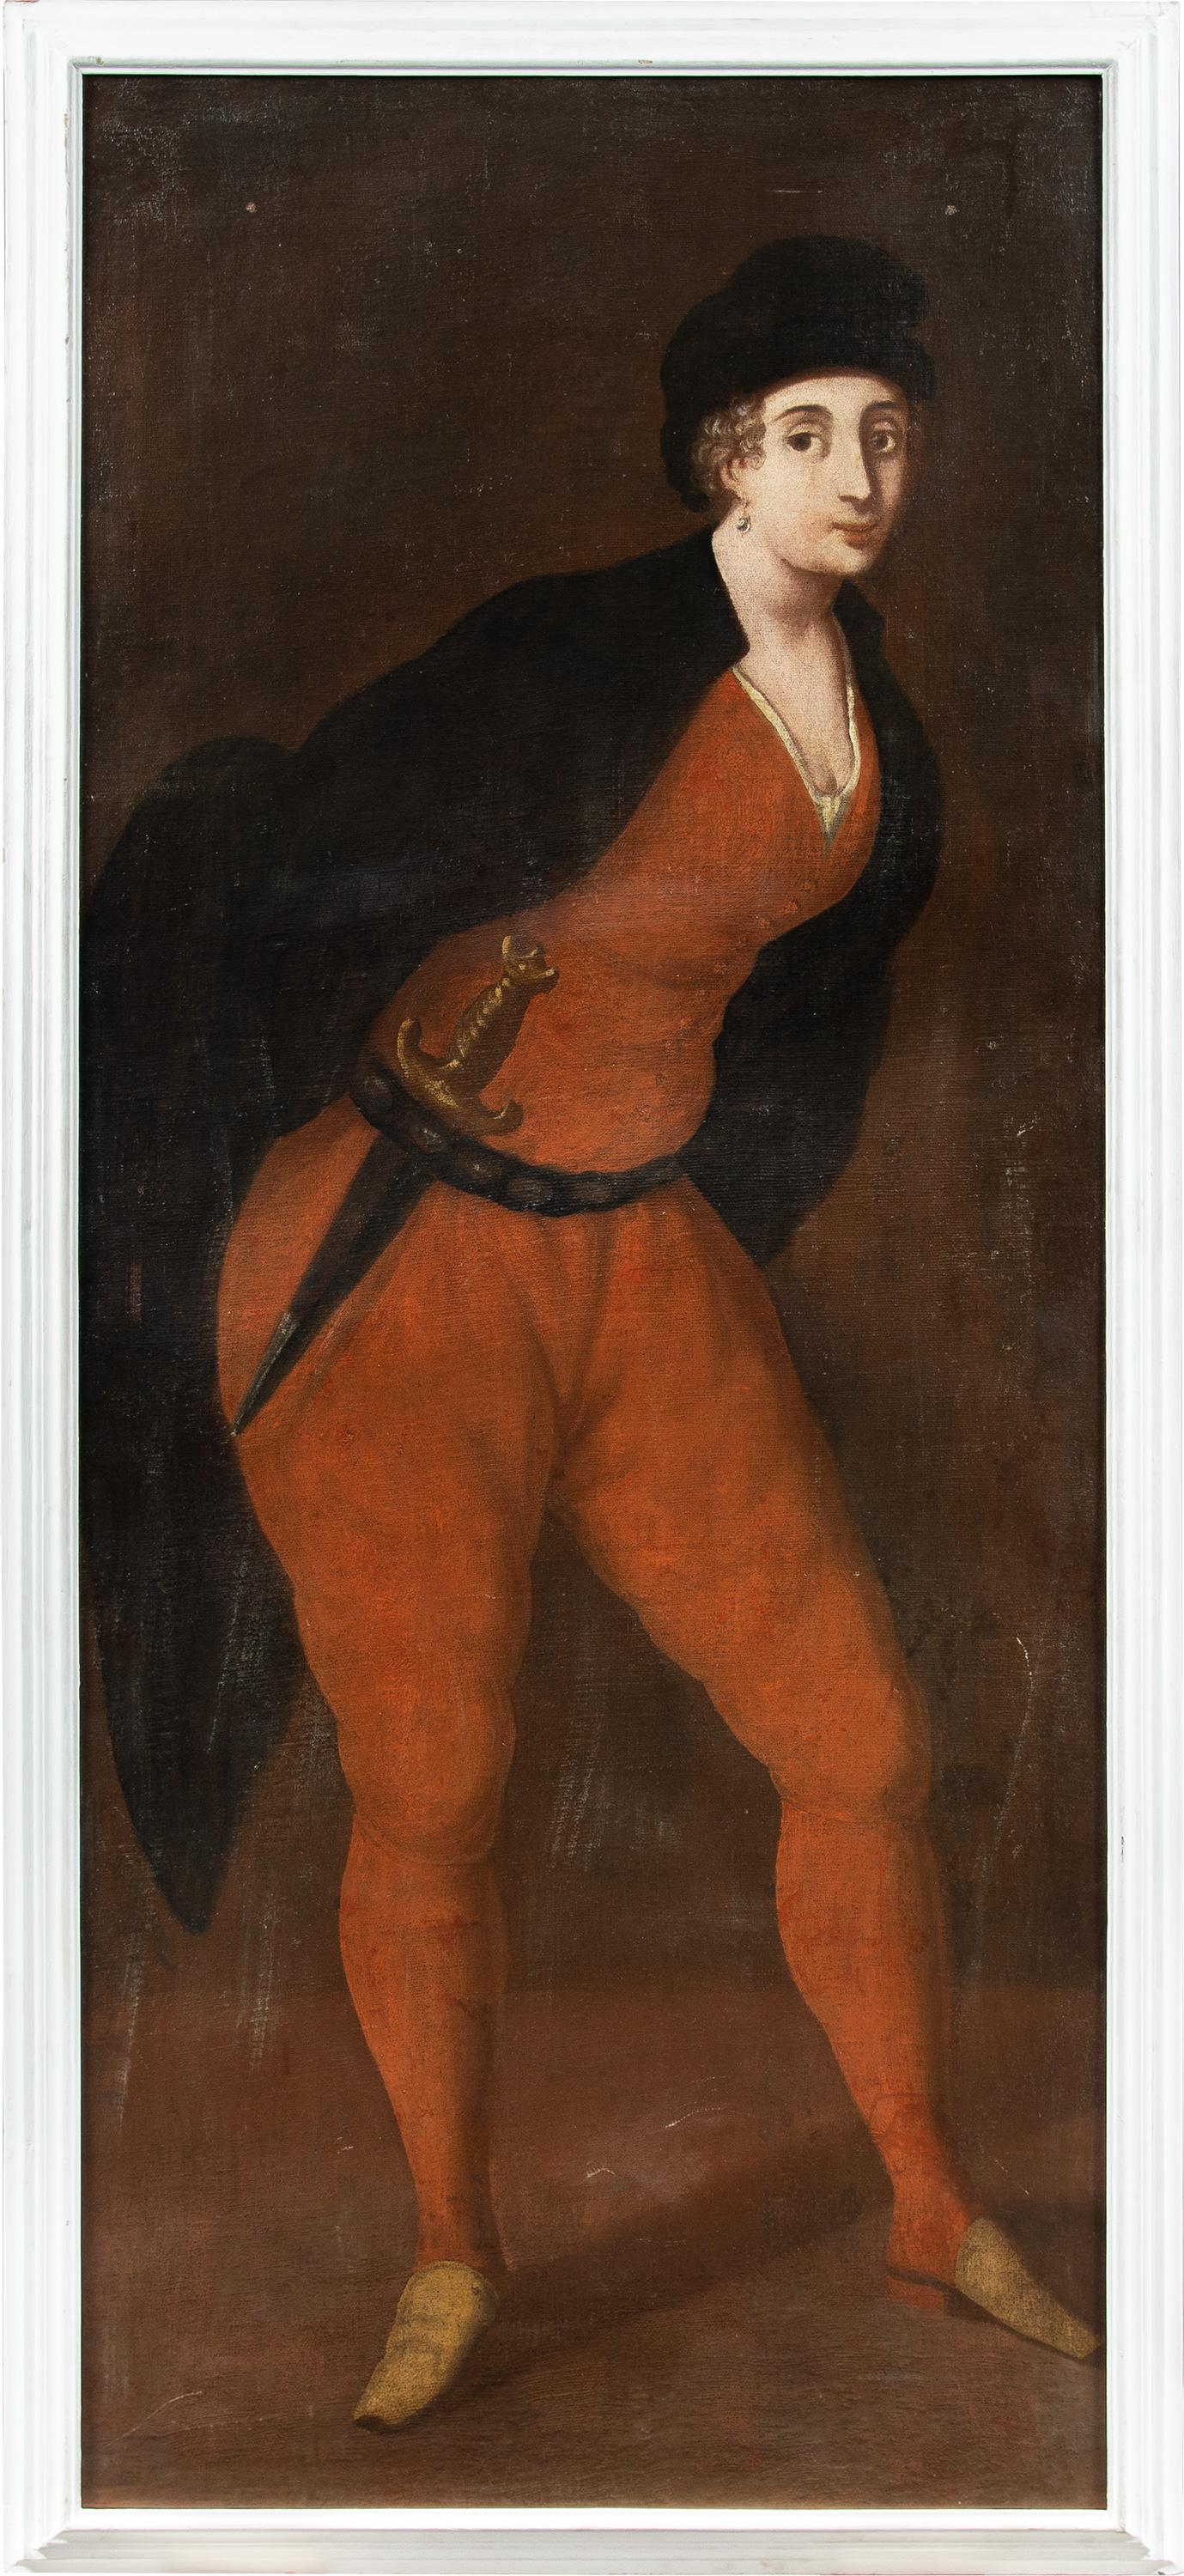 Venezianischer Rococò-Maler - Maskenfigurenmalerei des 18. Jahrhunderts - Karneval von Pantalone